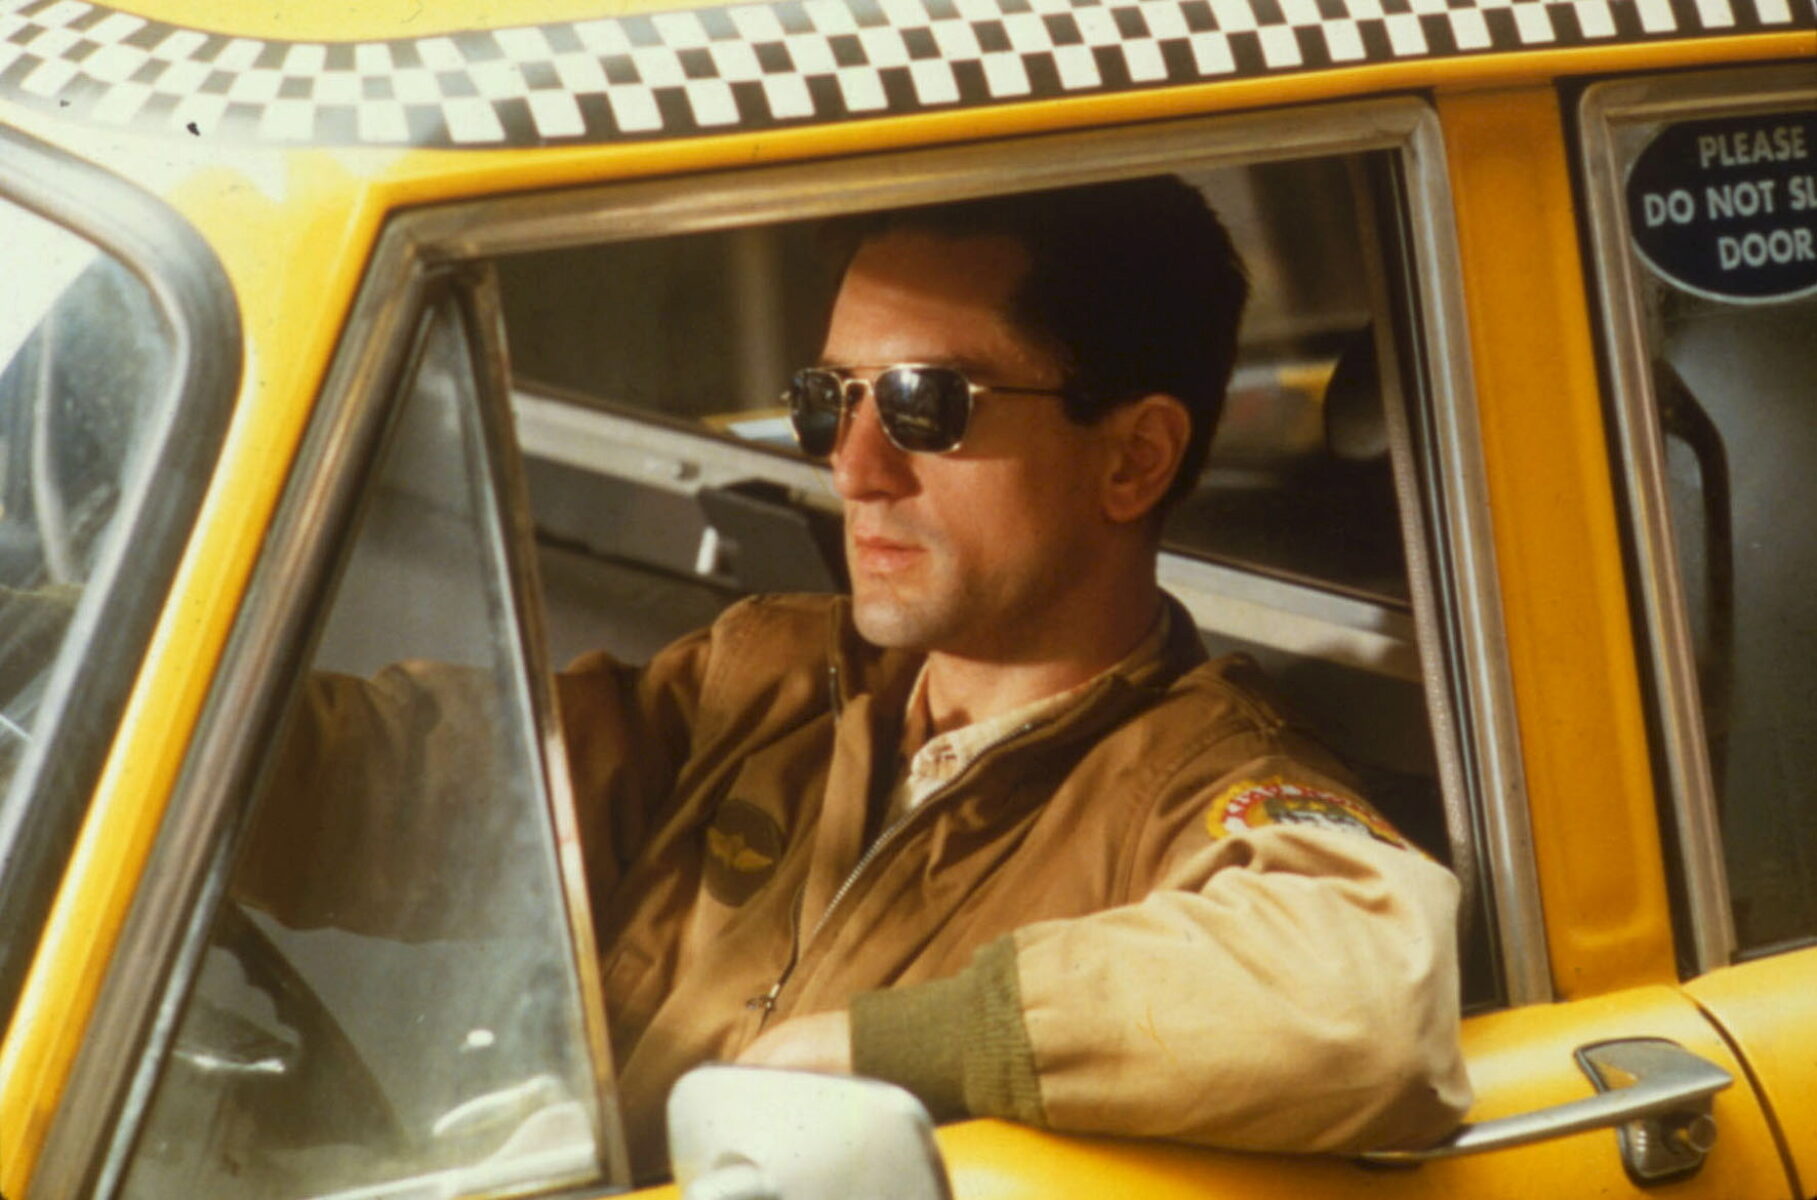 Taxi Driver de Martin Scorsese